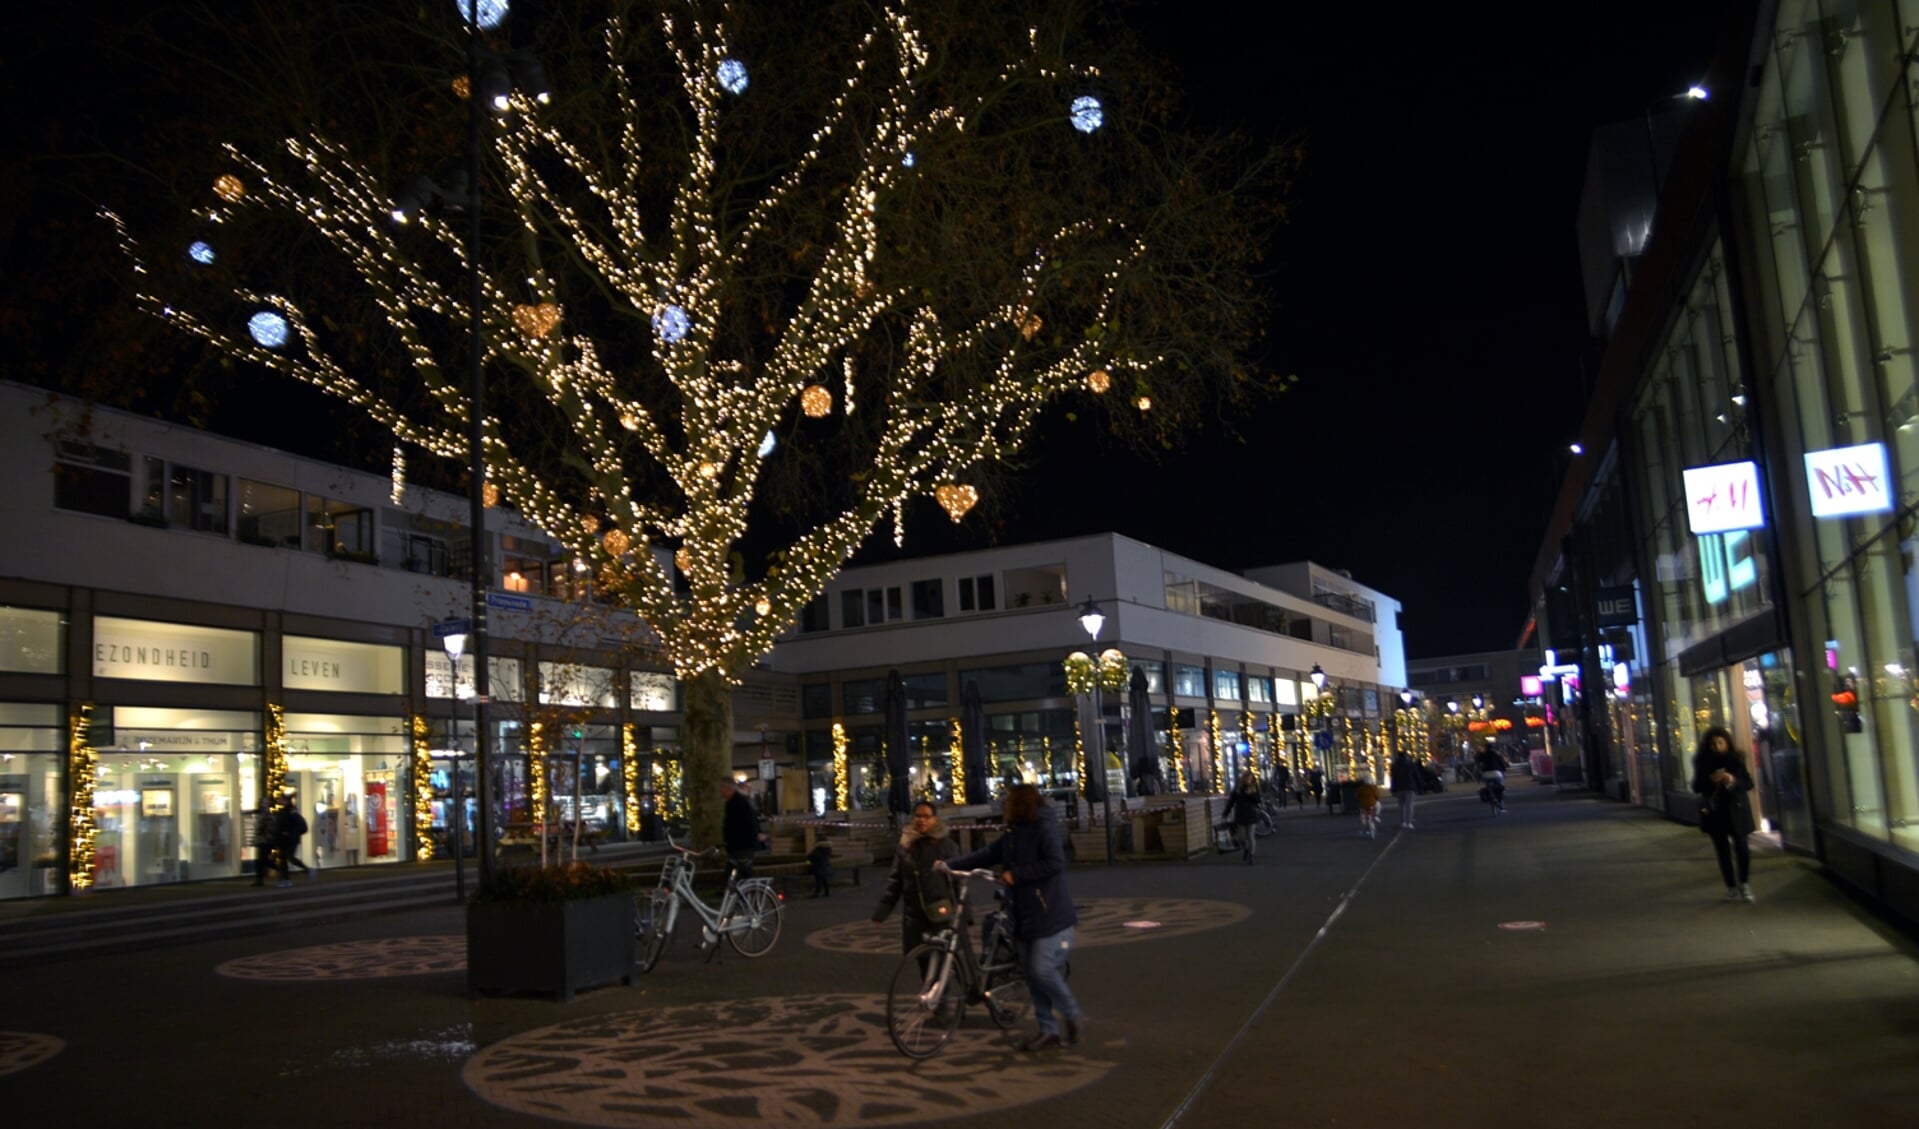 Het is momenteel sfeervol shoppen in een centrum vol lichtjes. (foto: Henk Lunenburg)